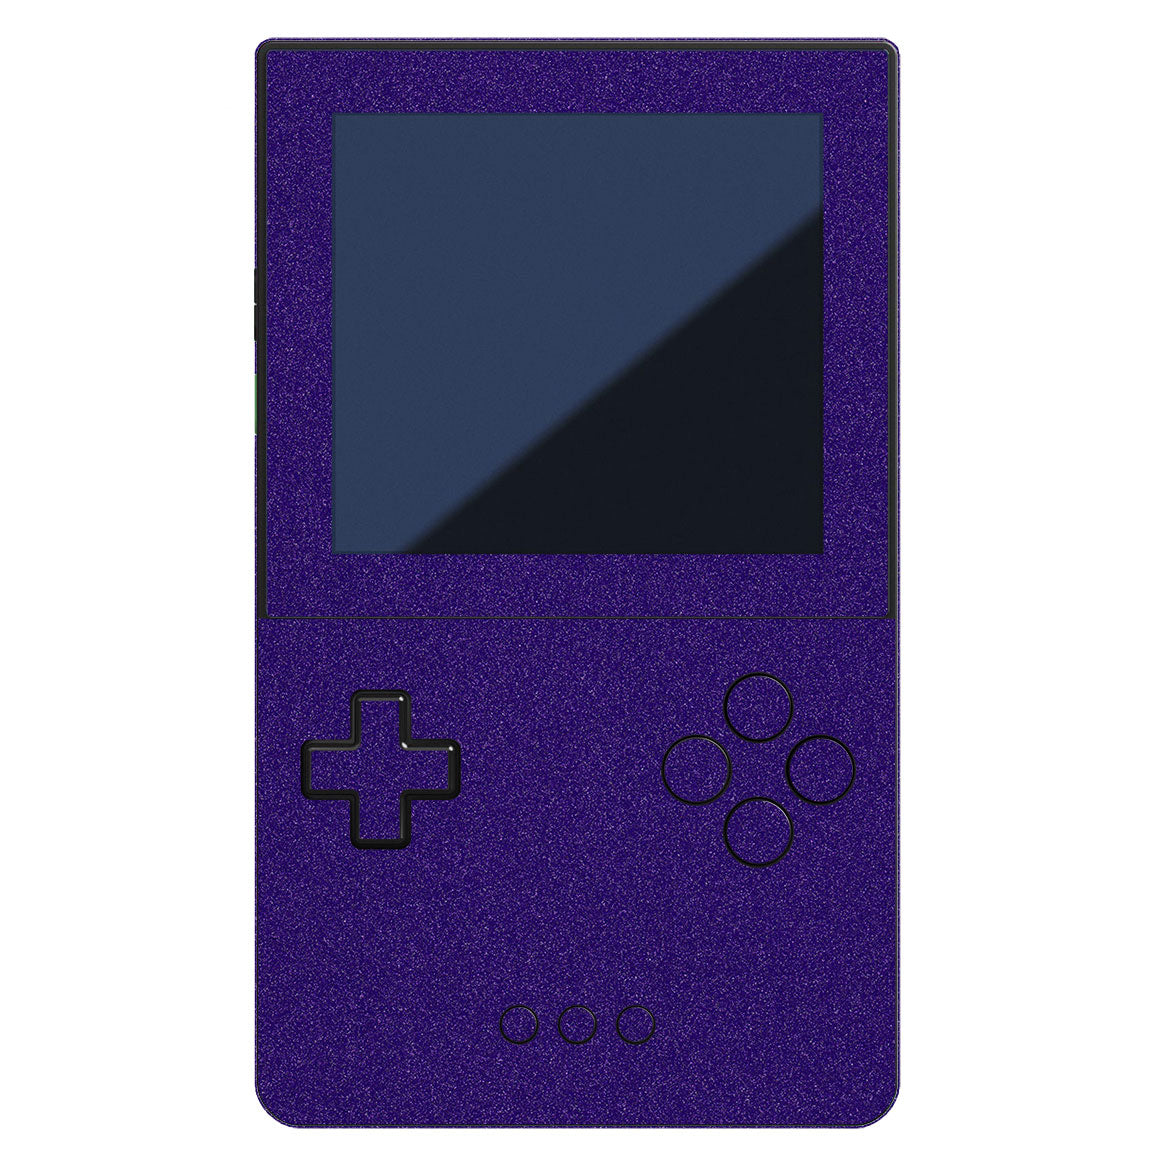 Nintendo Game Boy Advance SP Onyx Black avec Algeria